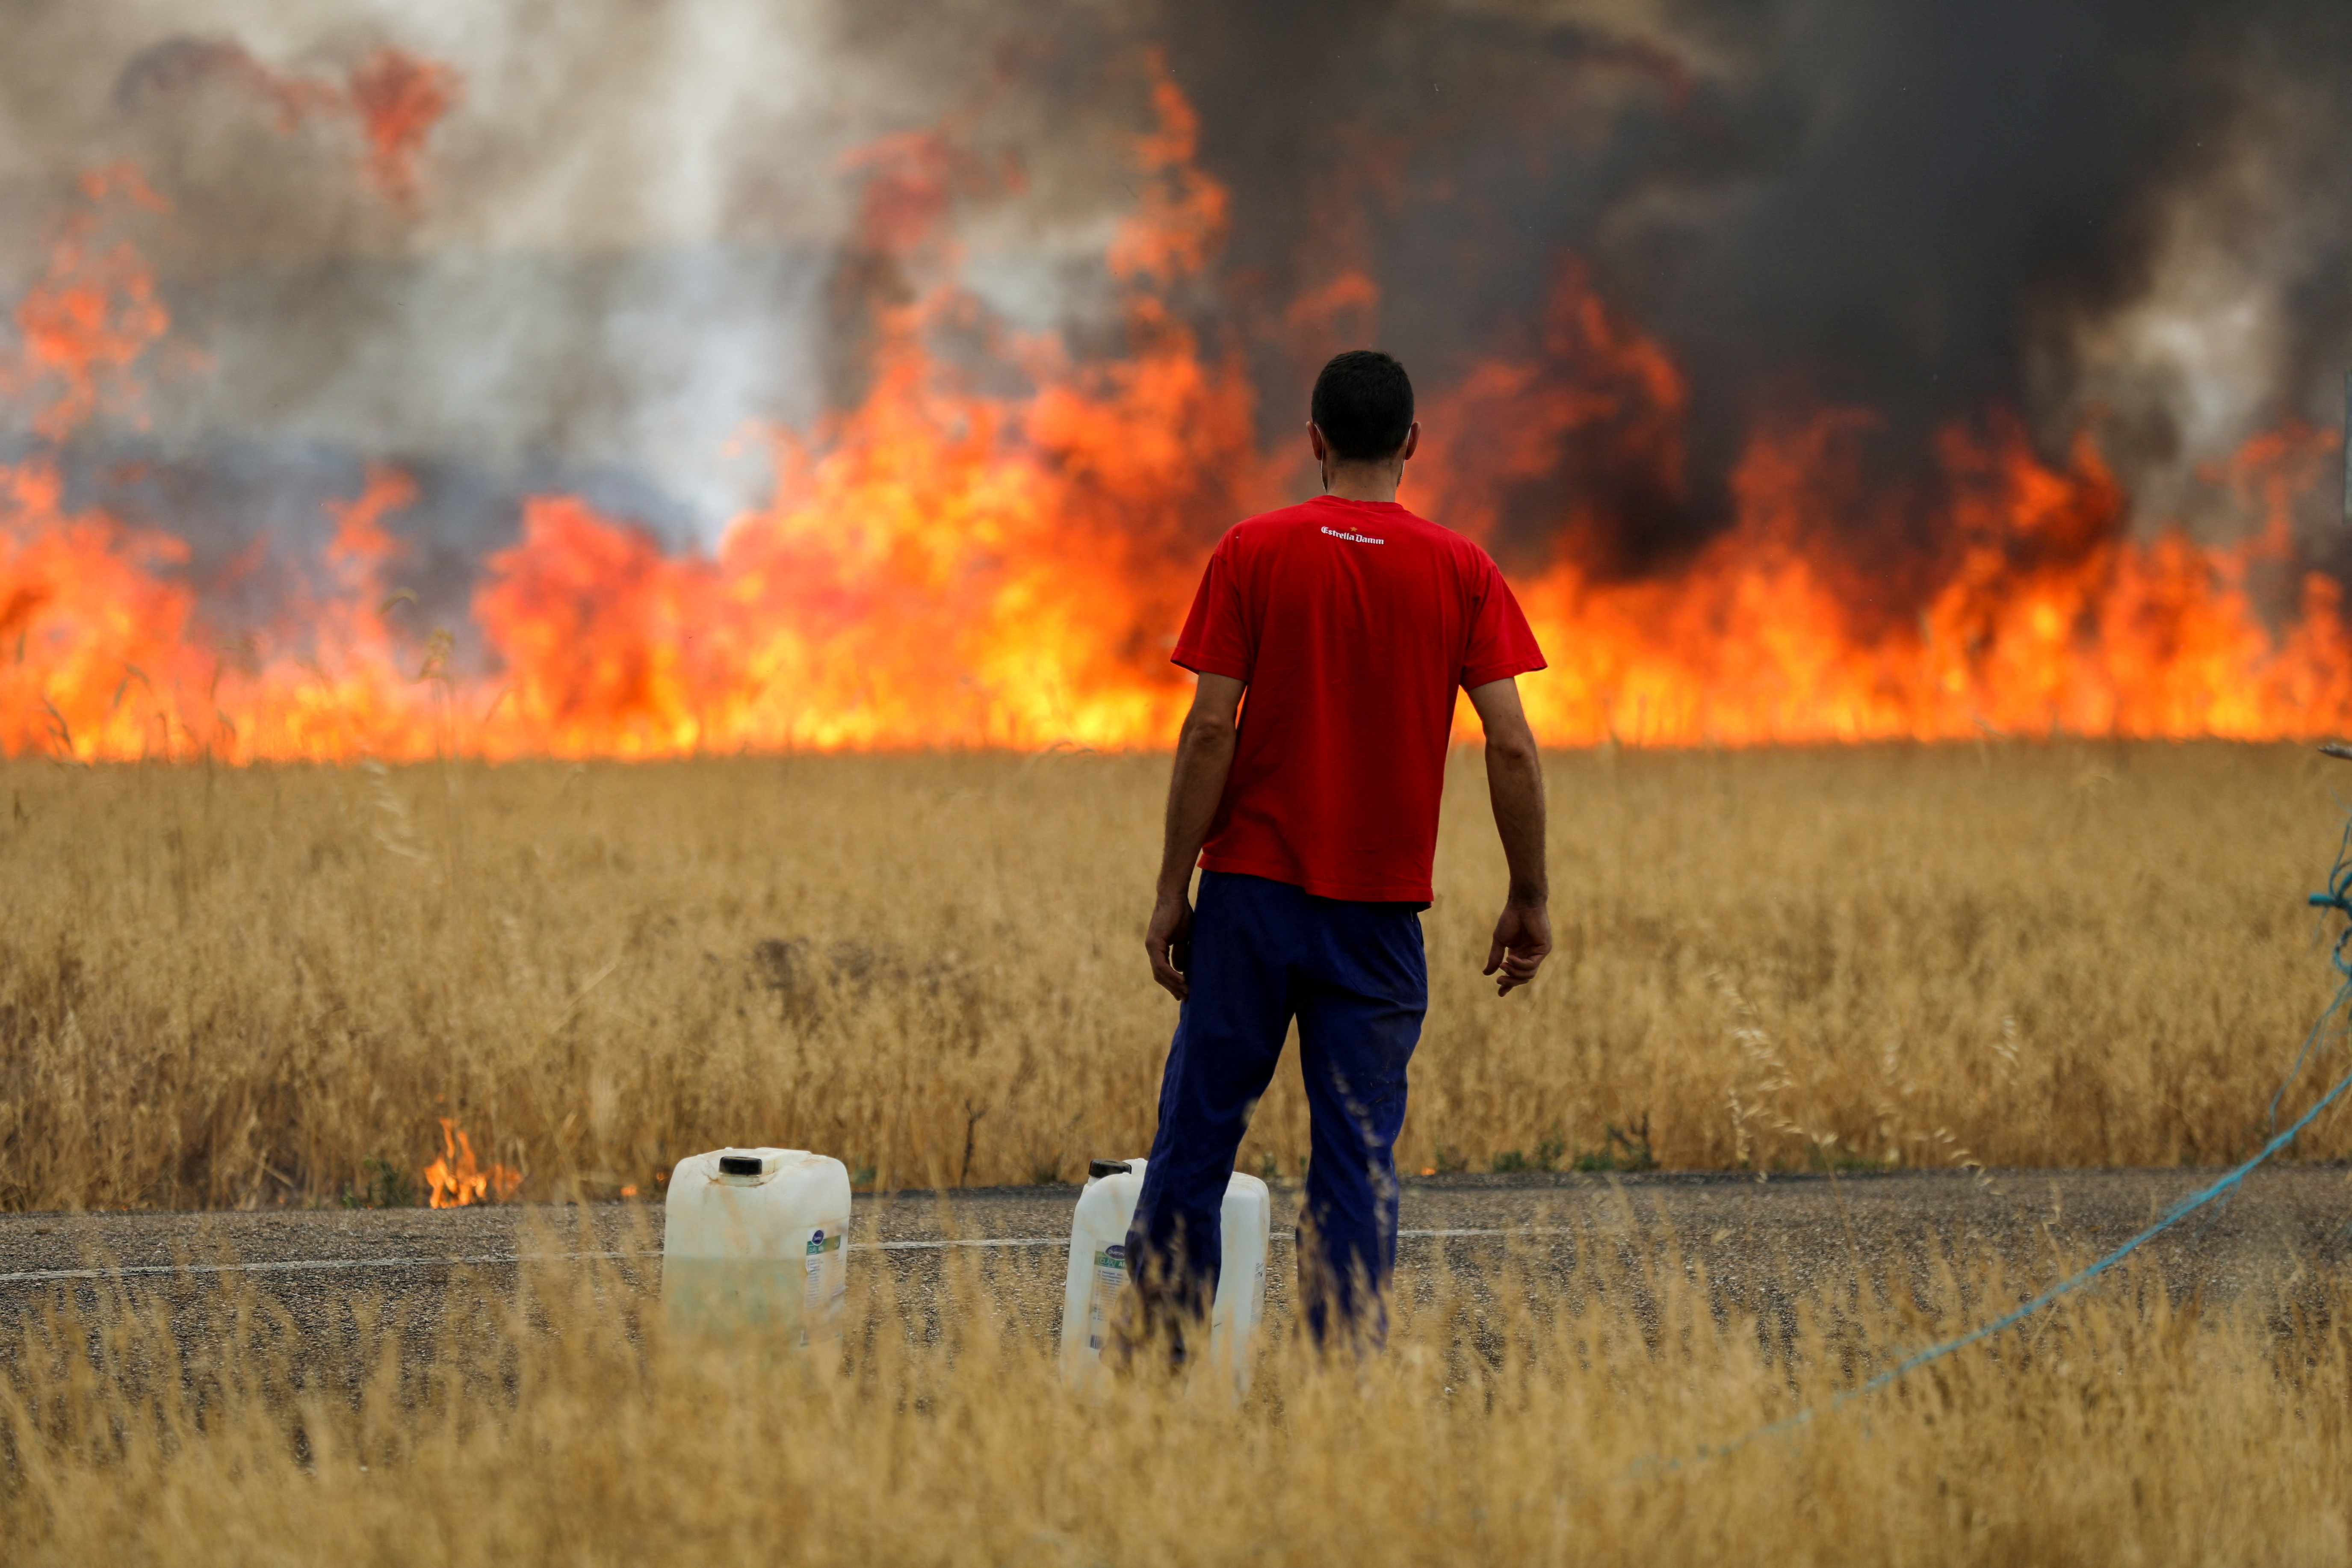 Un pastor observa un incendio que quema un campo de trigo entre Tábara y Losacio, durante la segunda ola de calor del año, en la provincia de Zamora, España, 18 de julio de 2022. REUTERS/Isabel Infantes